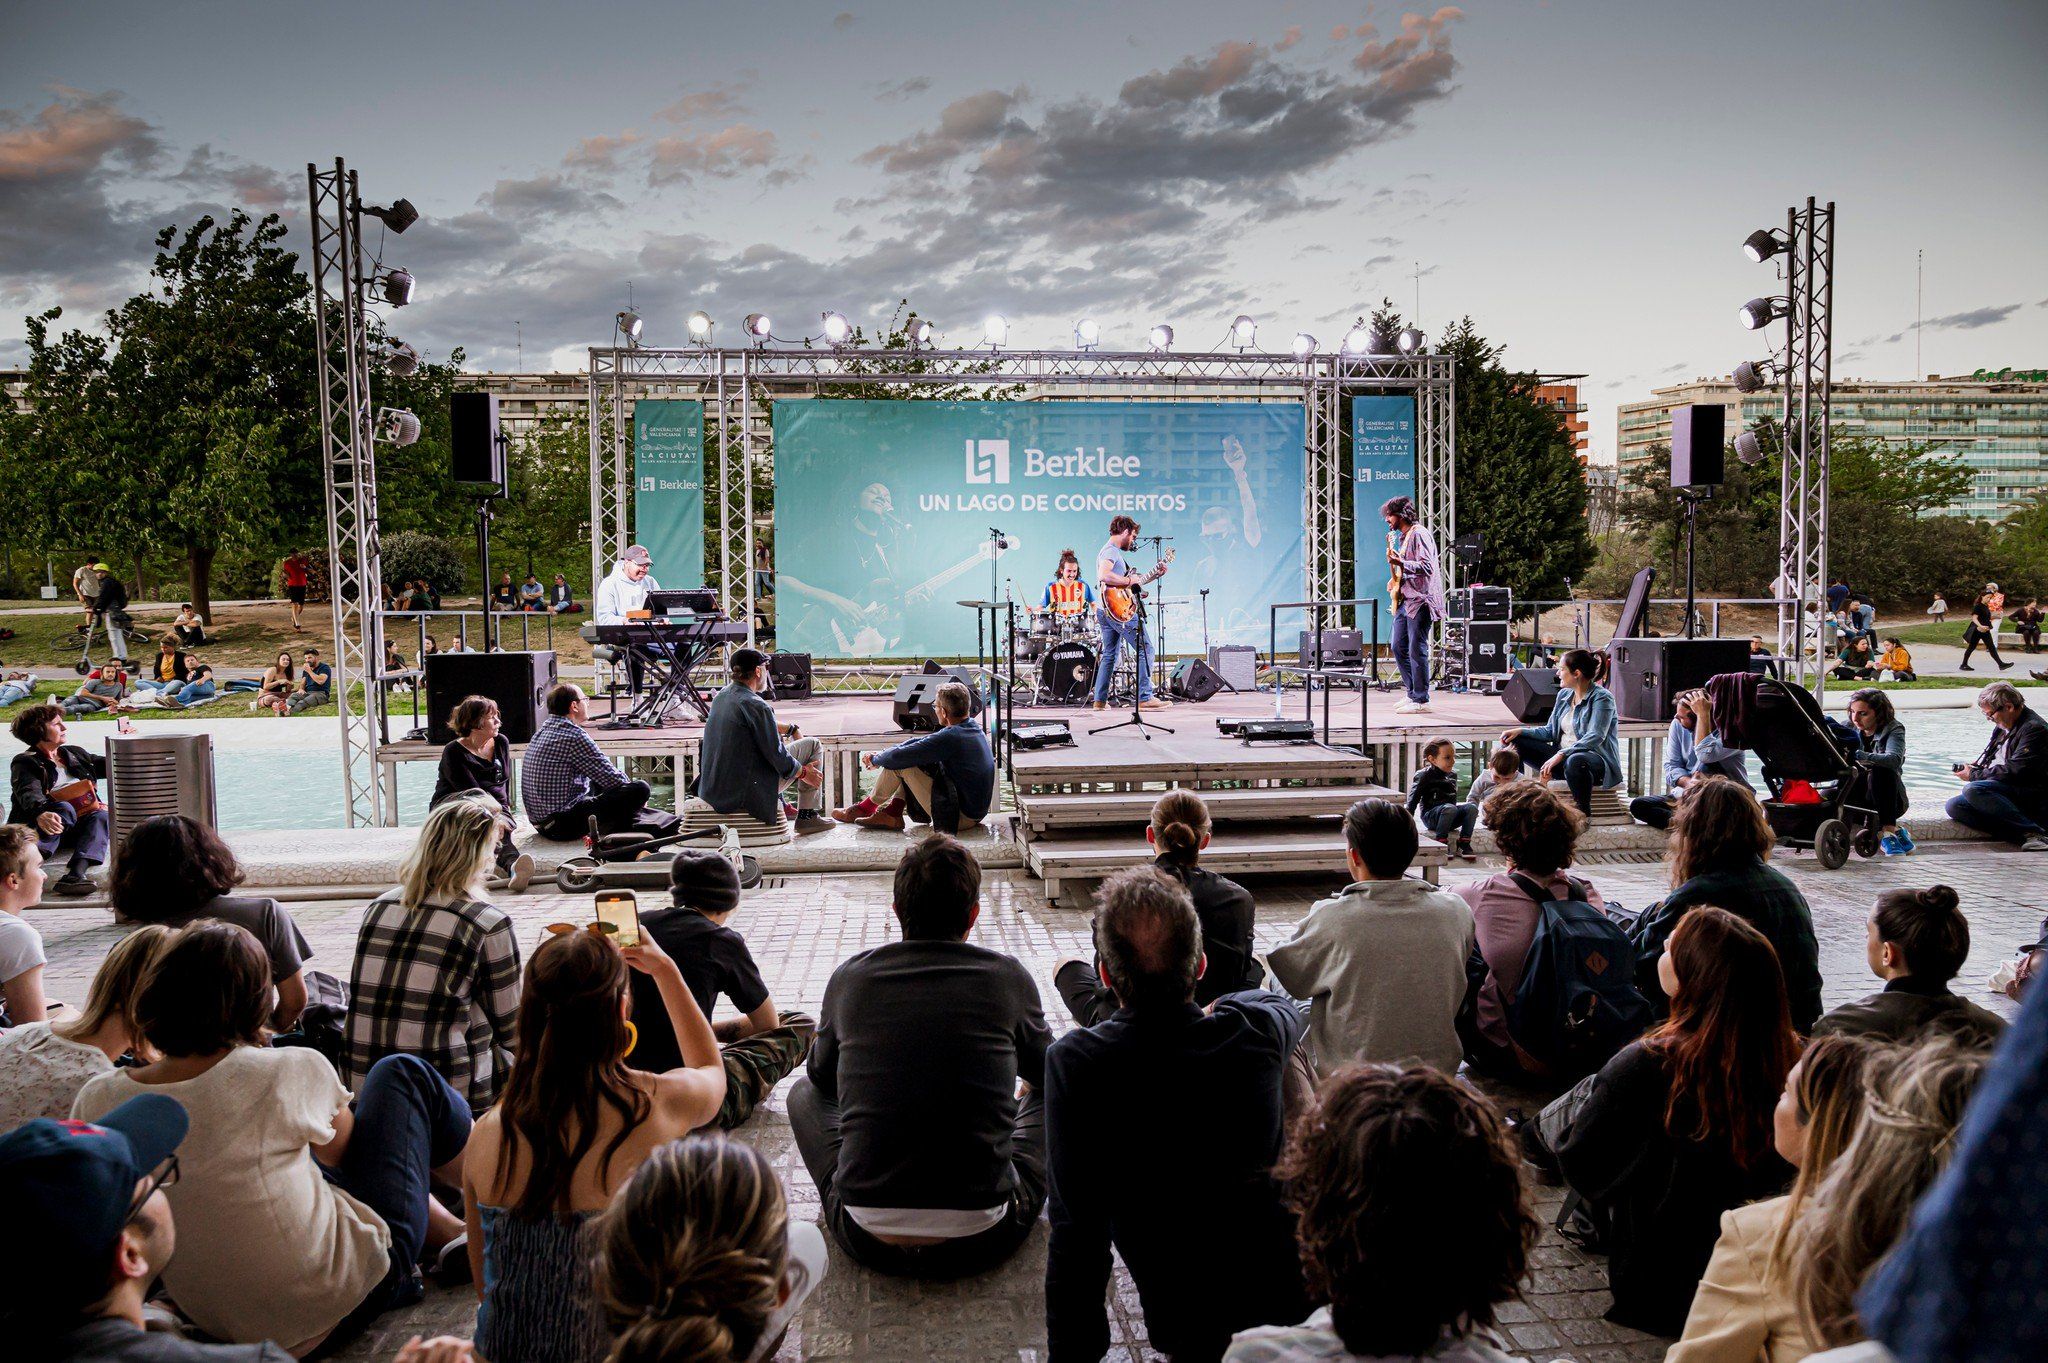 Vuelve 'Un Lago de Conciertos' a la Ciudad de las Artes y las Ciencias de València